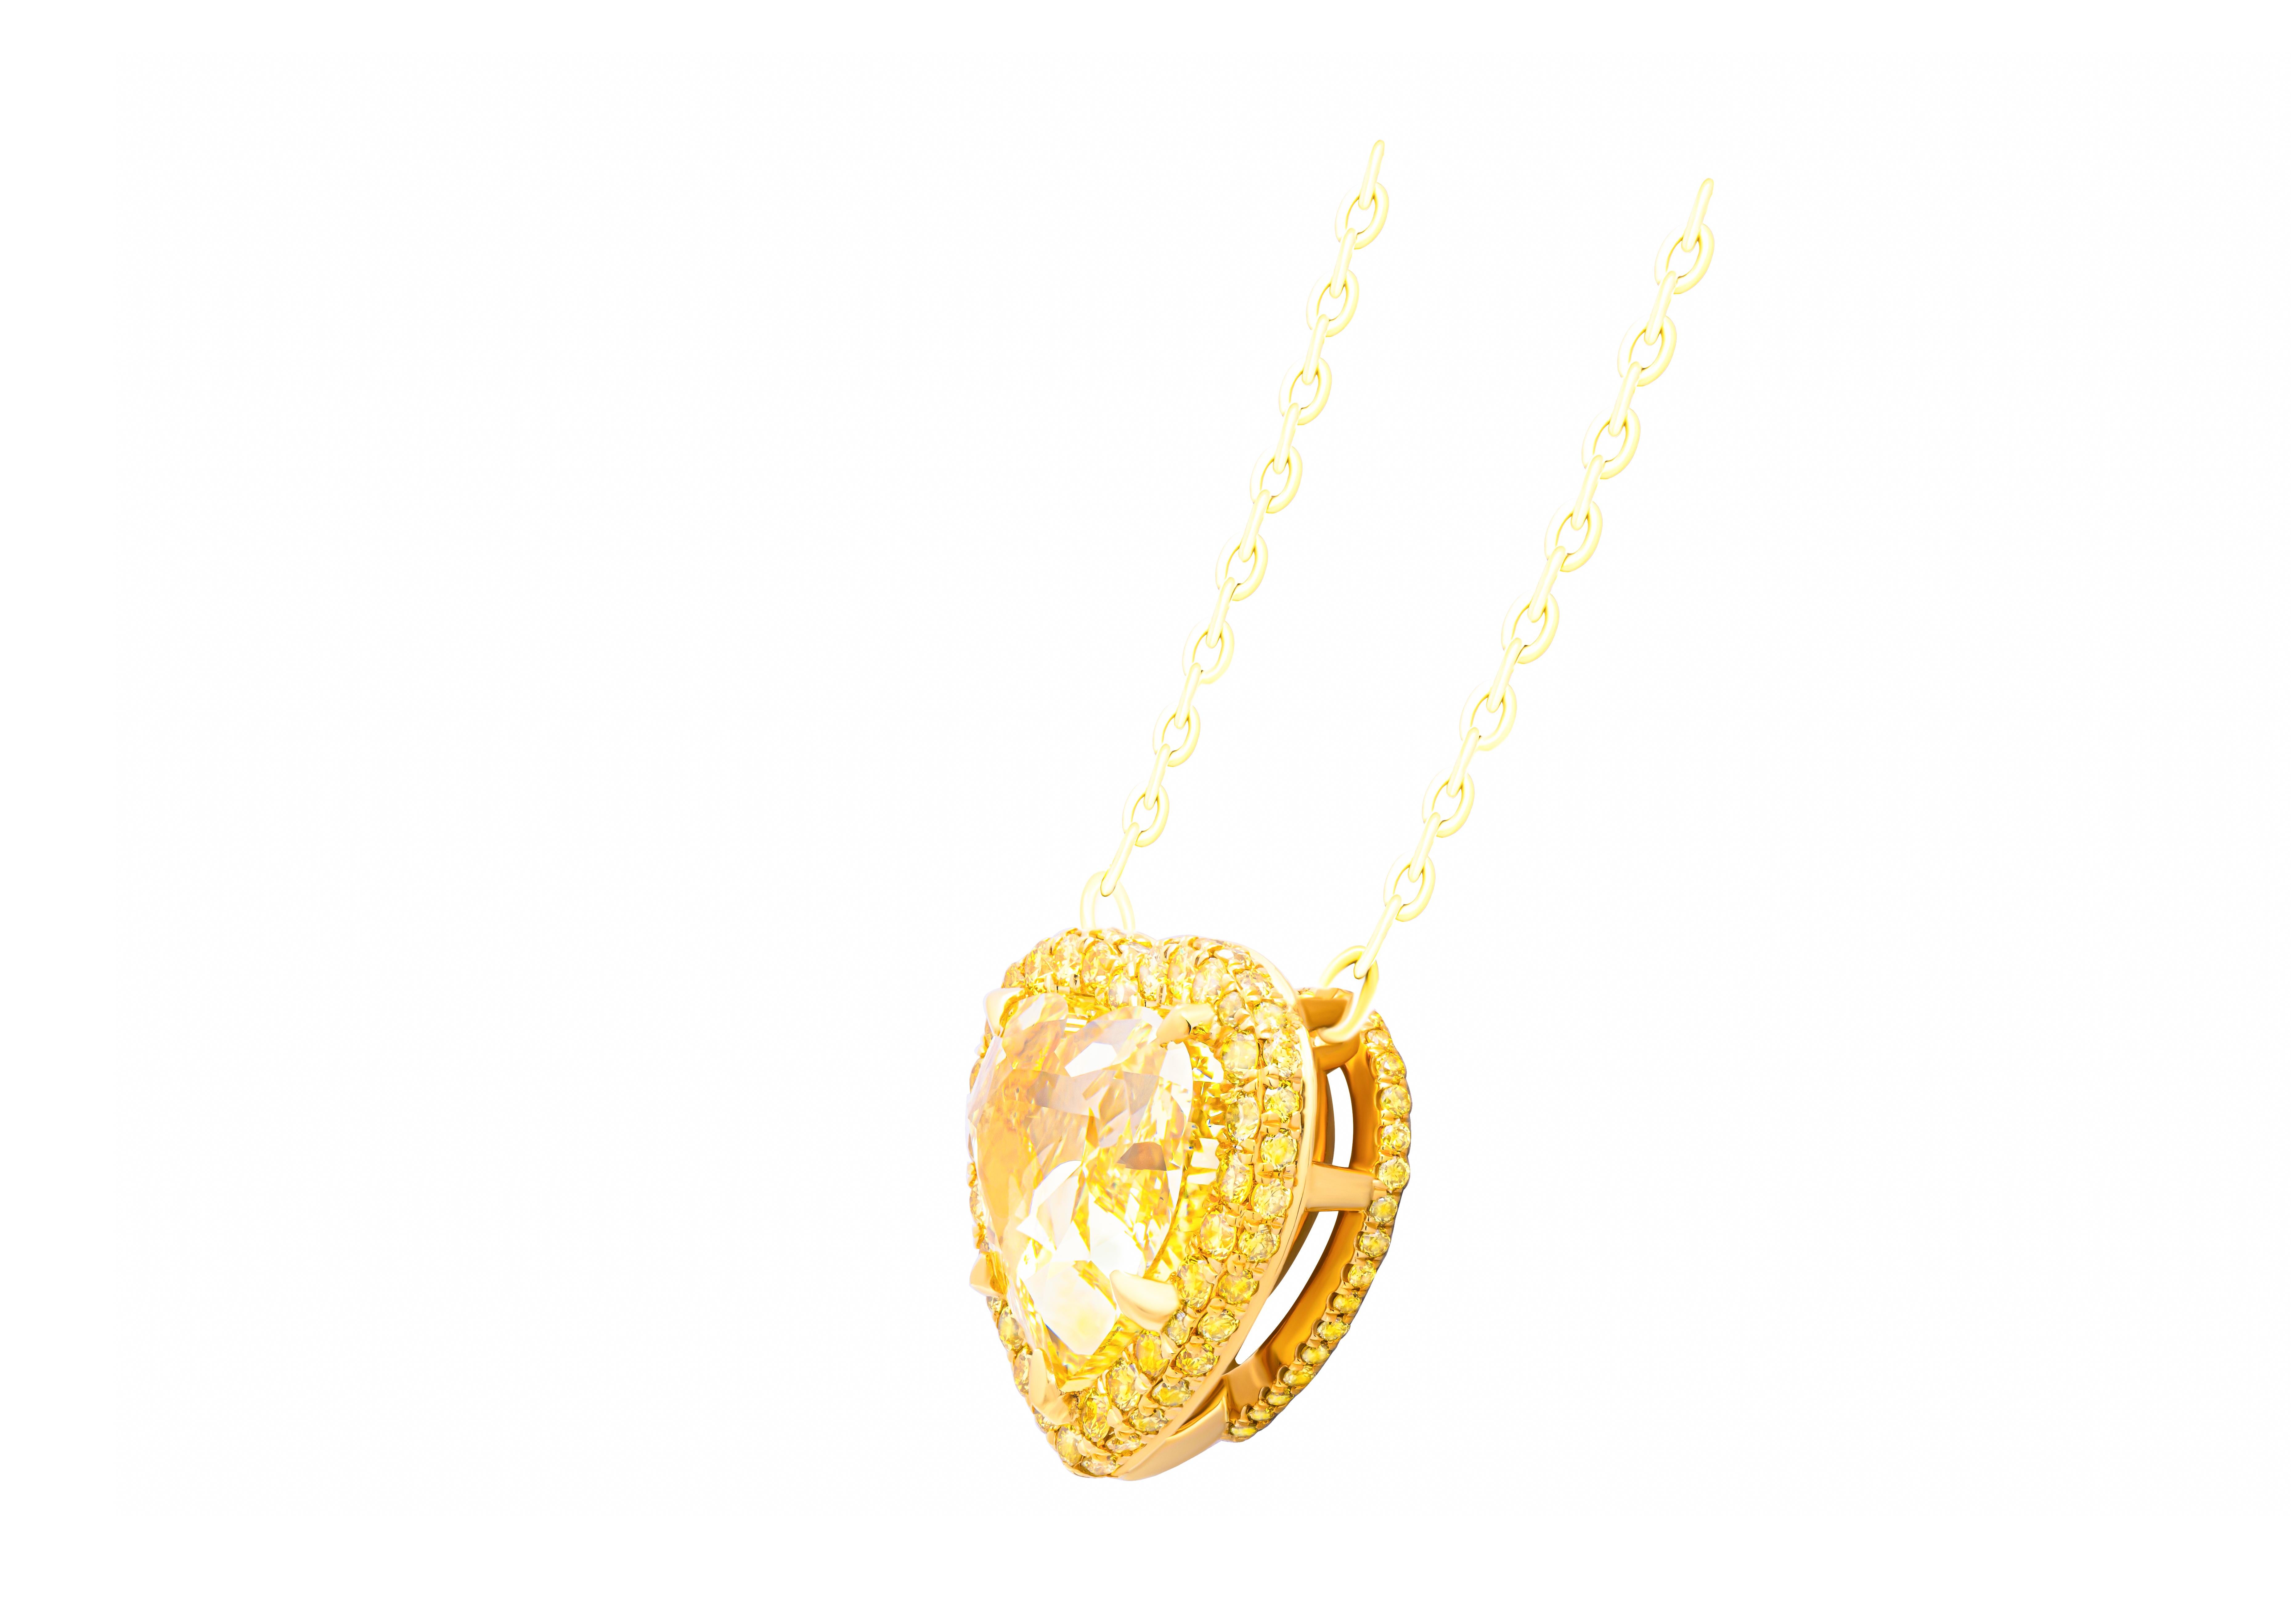 Voici notre exquis pendentif en forme de cœur réalisé en or jaune 18 carats, dont la pièce maîtresse est un éblouissant diamant en forme de cœur de 6,03 carats de couleur jaune intense certifié par le GIA avec le numéro d'identification